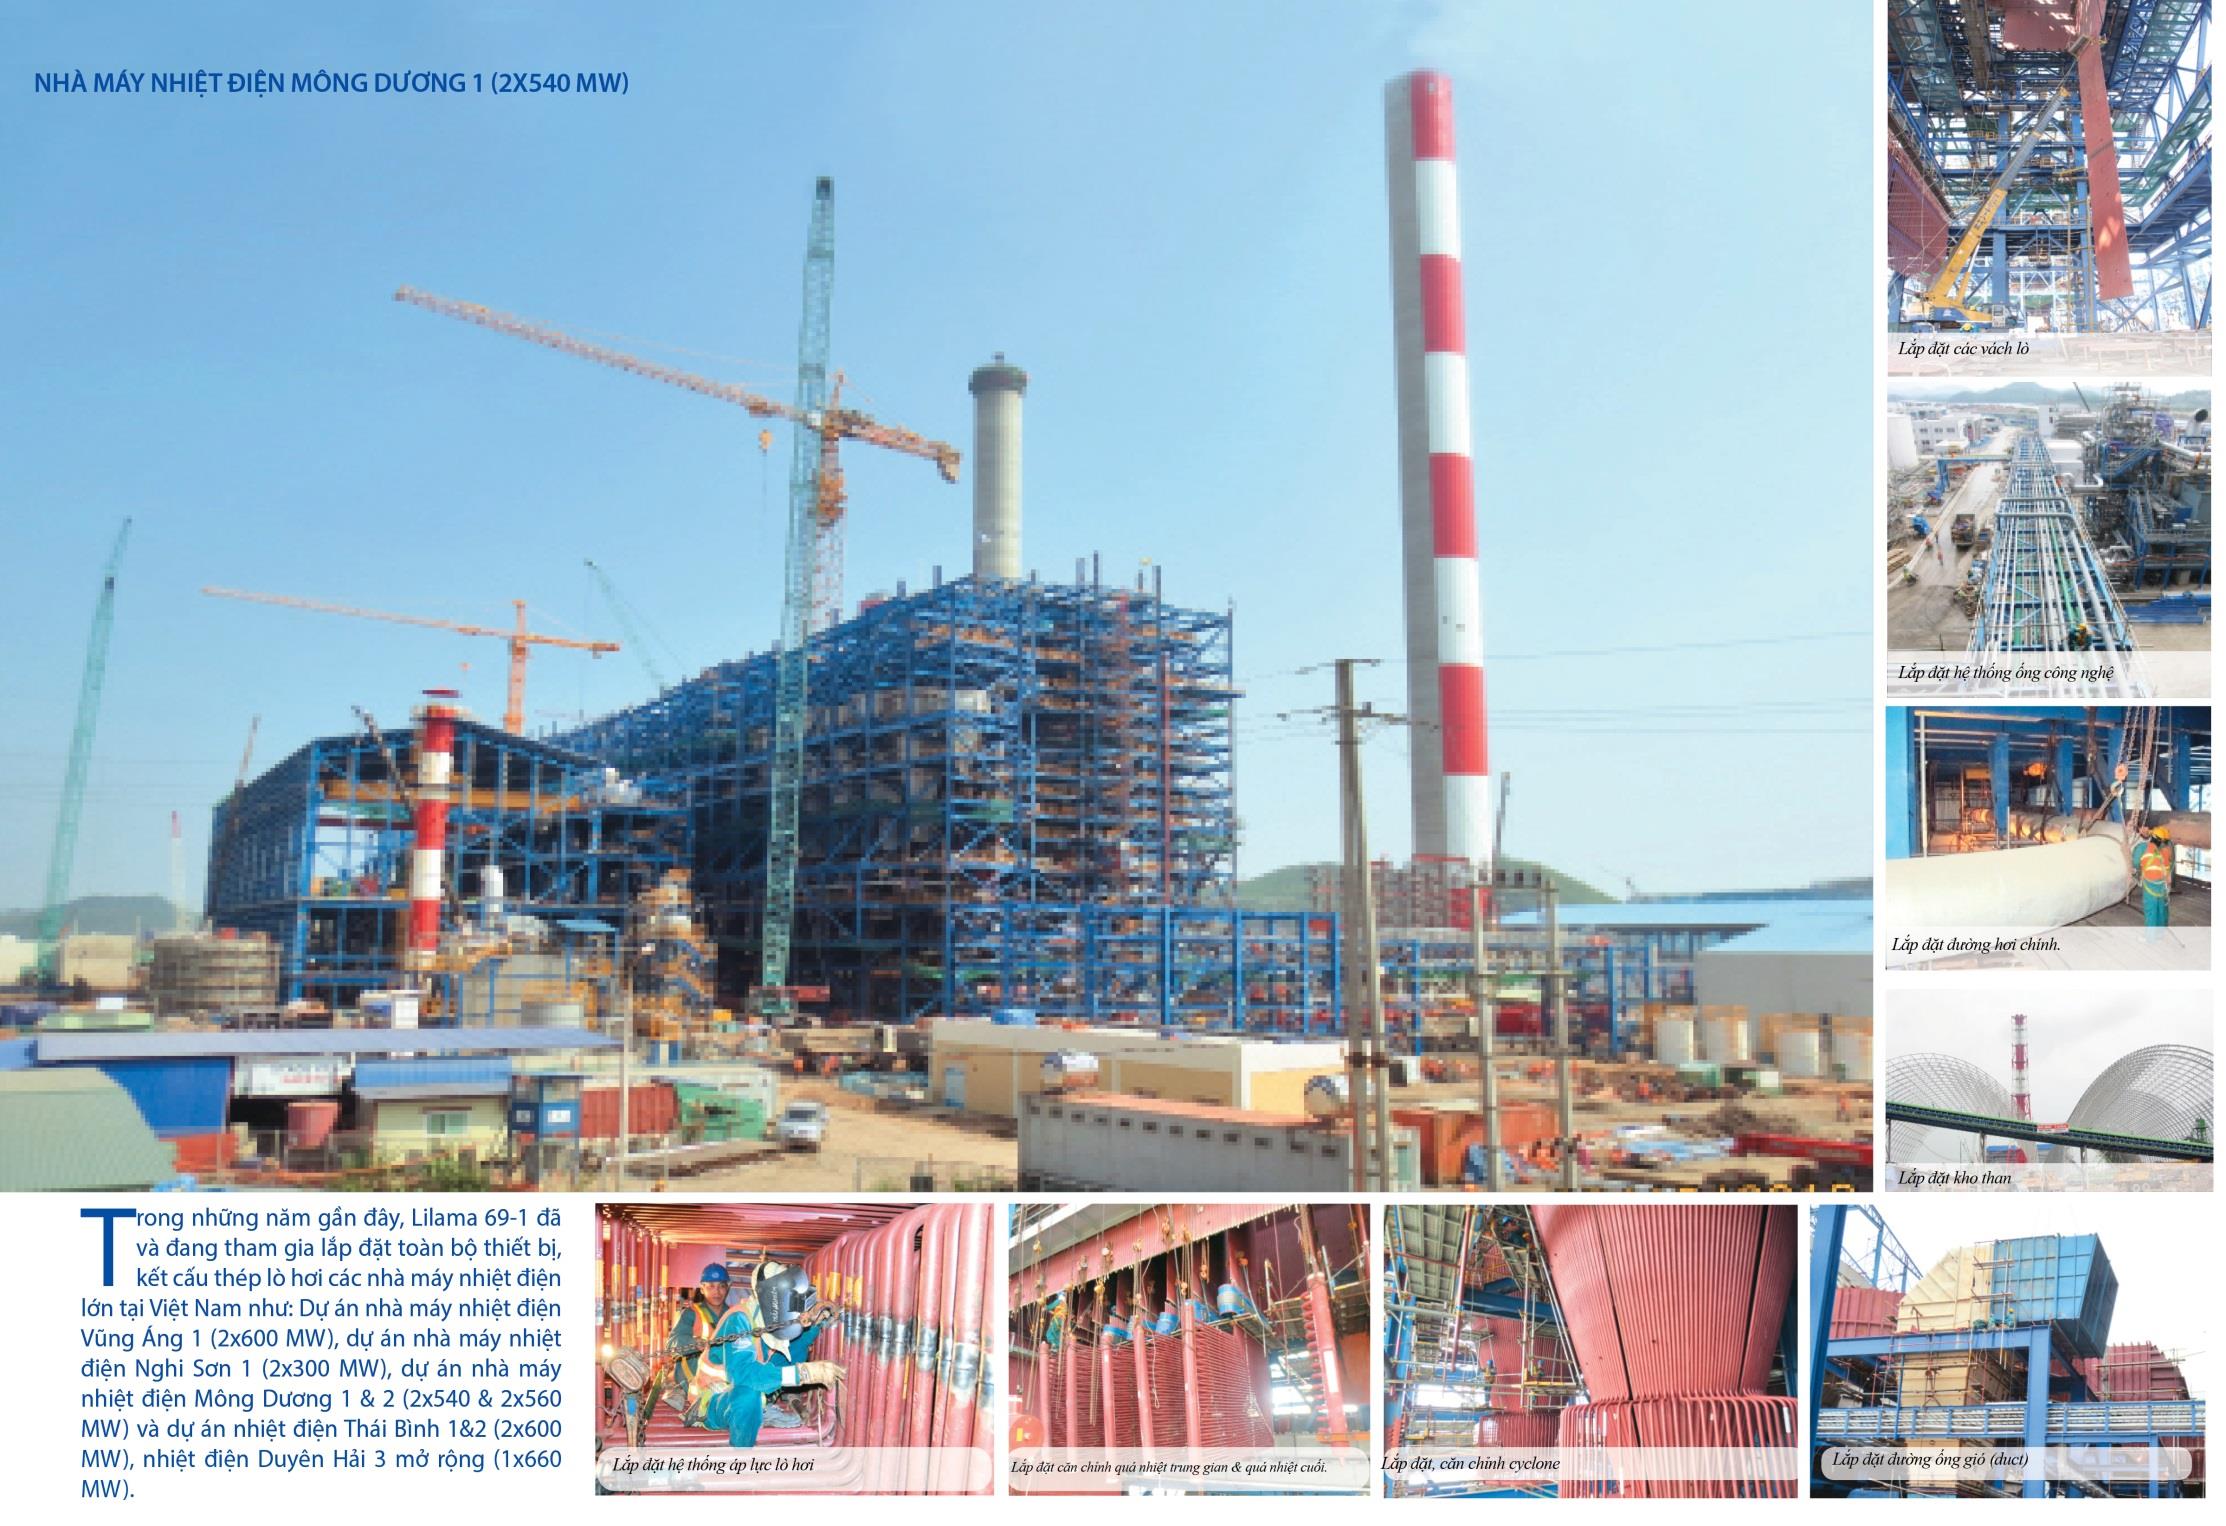 Trong những năm gần đây, Lilama 69-1 đã và đang tham gia lắp đặt toàn bộ thiết bị, kết cấu thép lò hơi các nhà máy nhiệt điện lớn tại Việt Nam như: Dự án nhà máy nhiệt điện Vũng Áng 1 (2x600 MW),